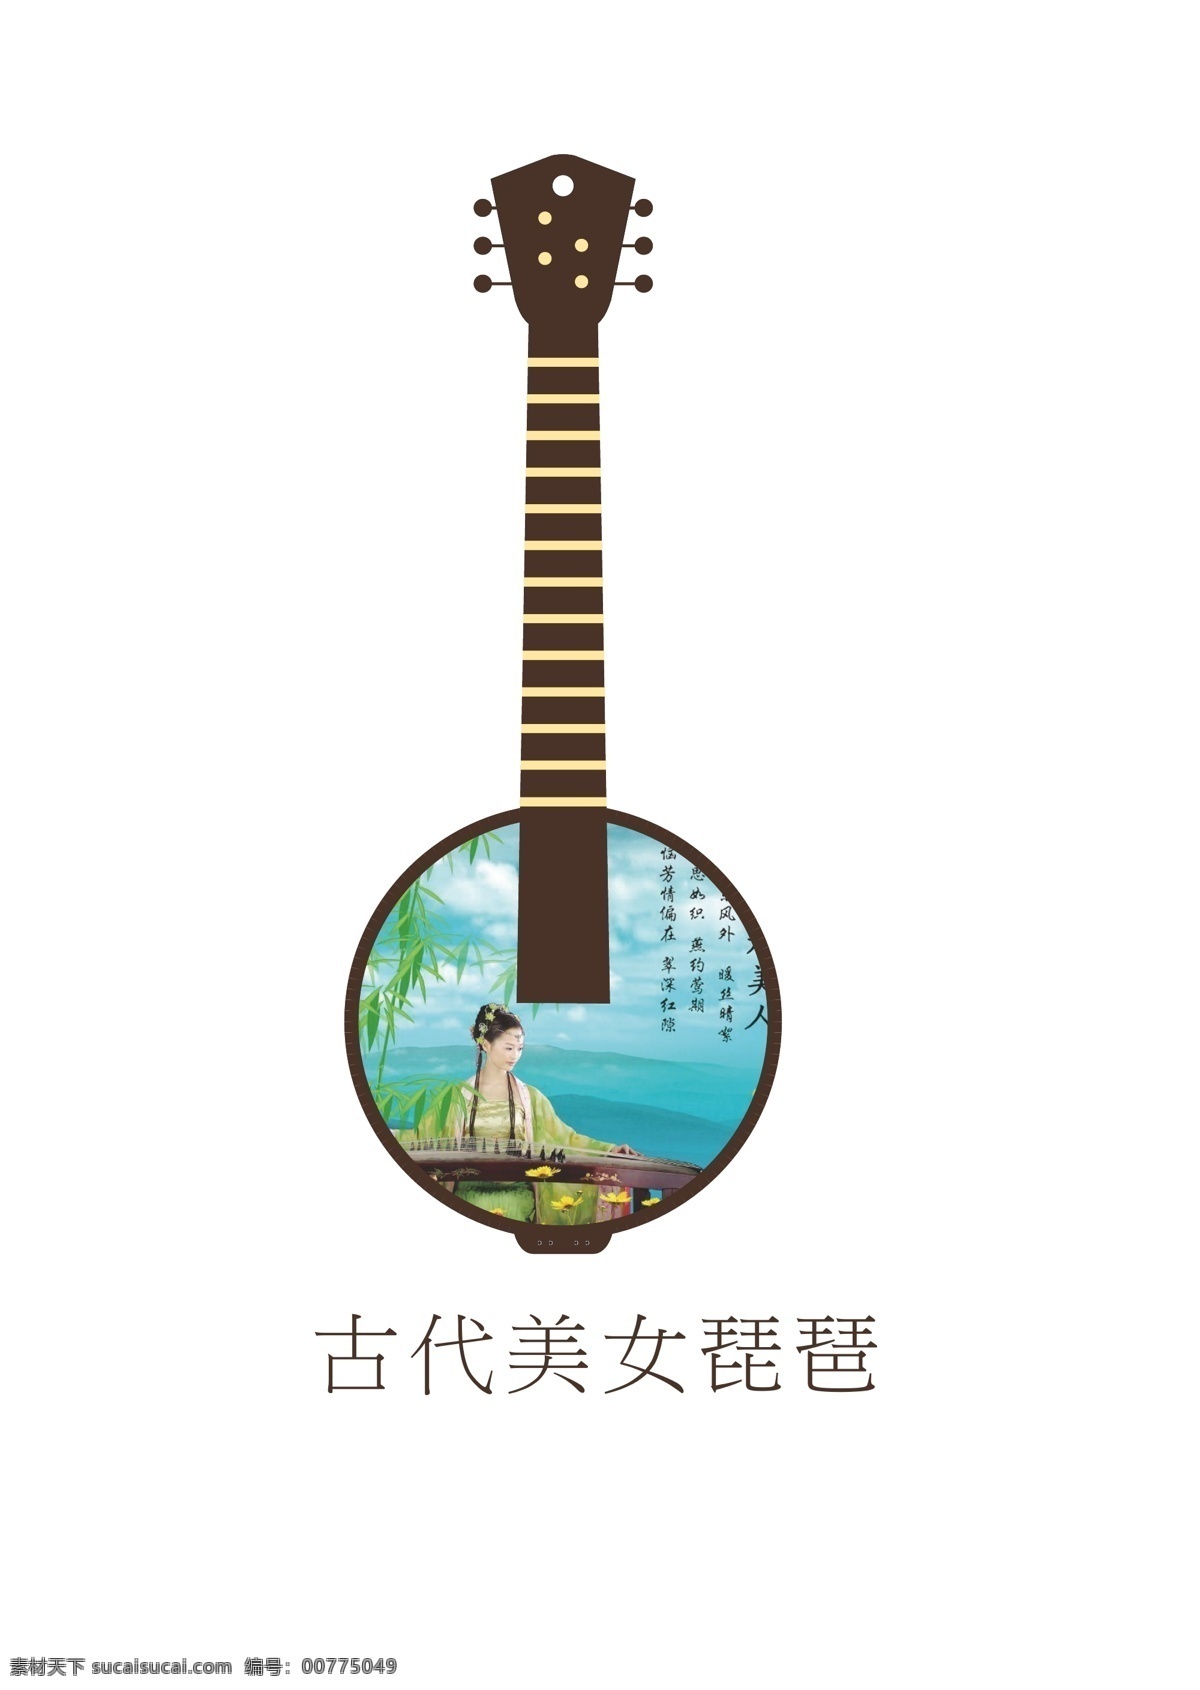 琵琶 矢量图 古典 风格 吉他 古典吉他 ai琵琶 美女琵琶 标志图标 其他图标